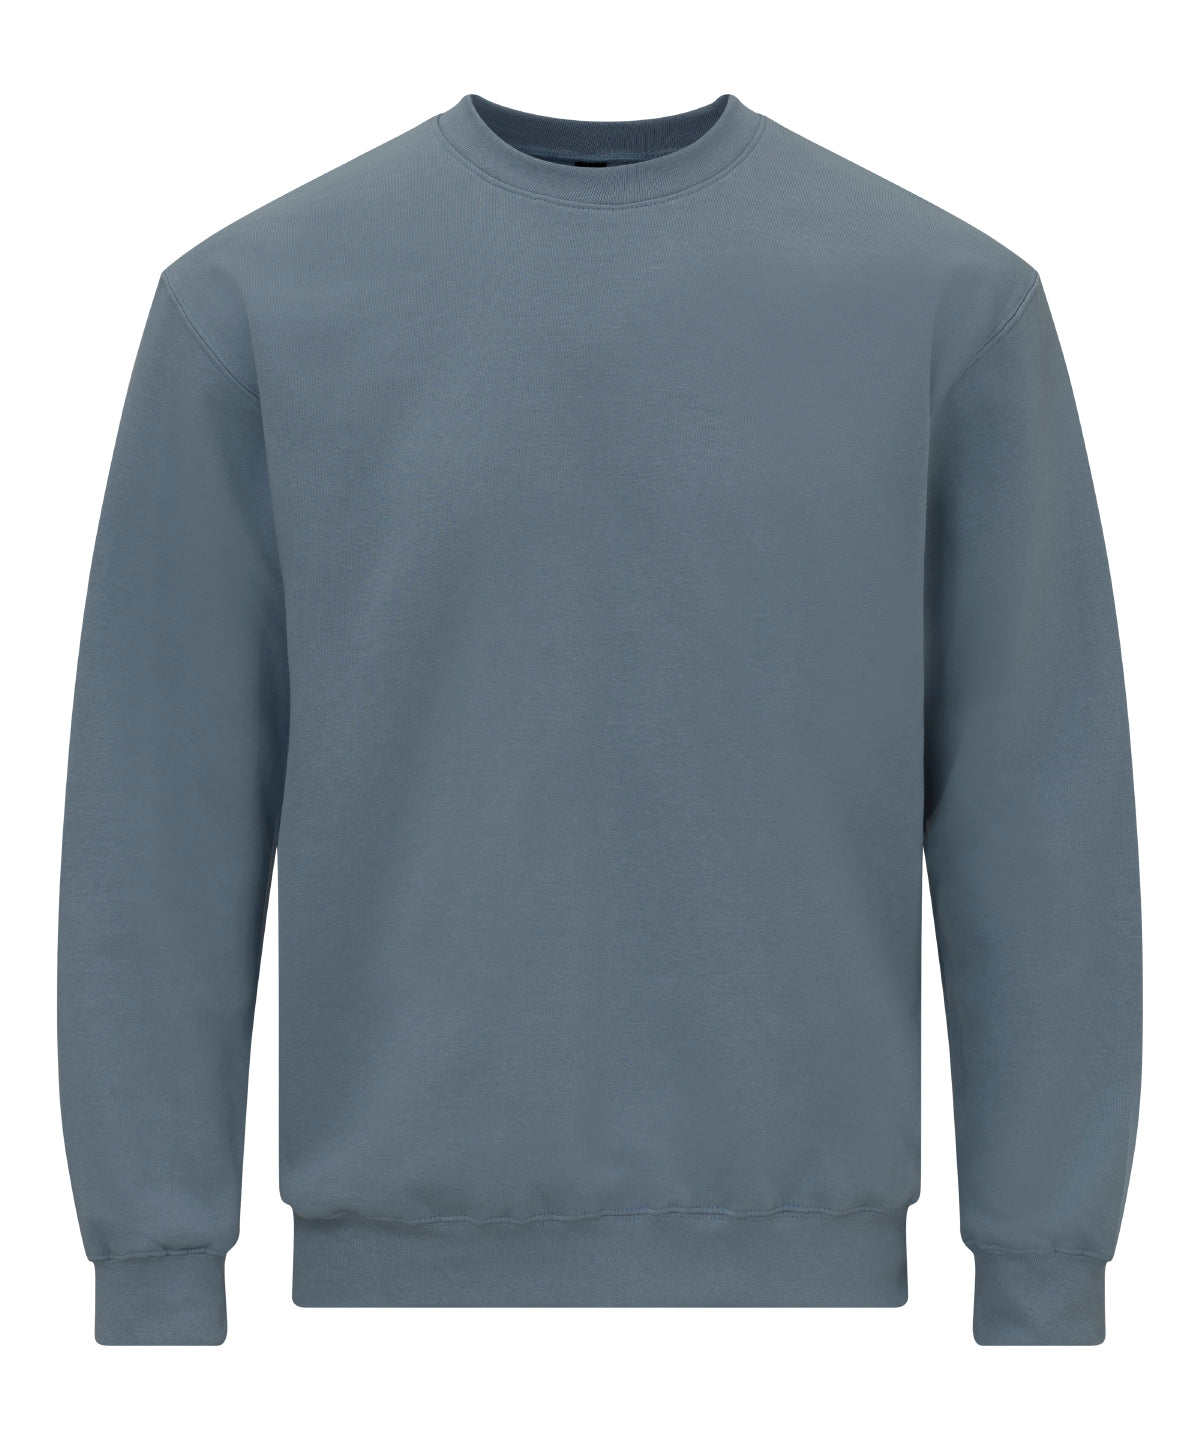 Personalised Sweatshirts - Dark Grey Gildan Softstyle™ midweight fleece adult crew neck